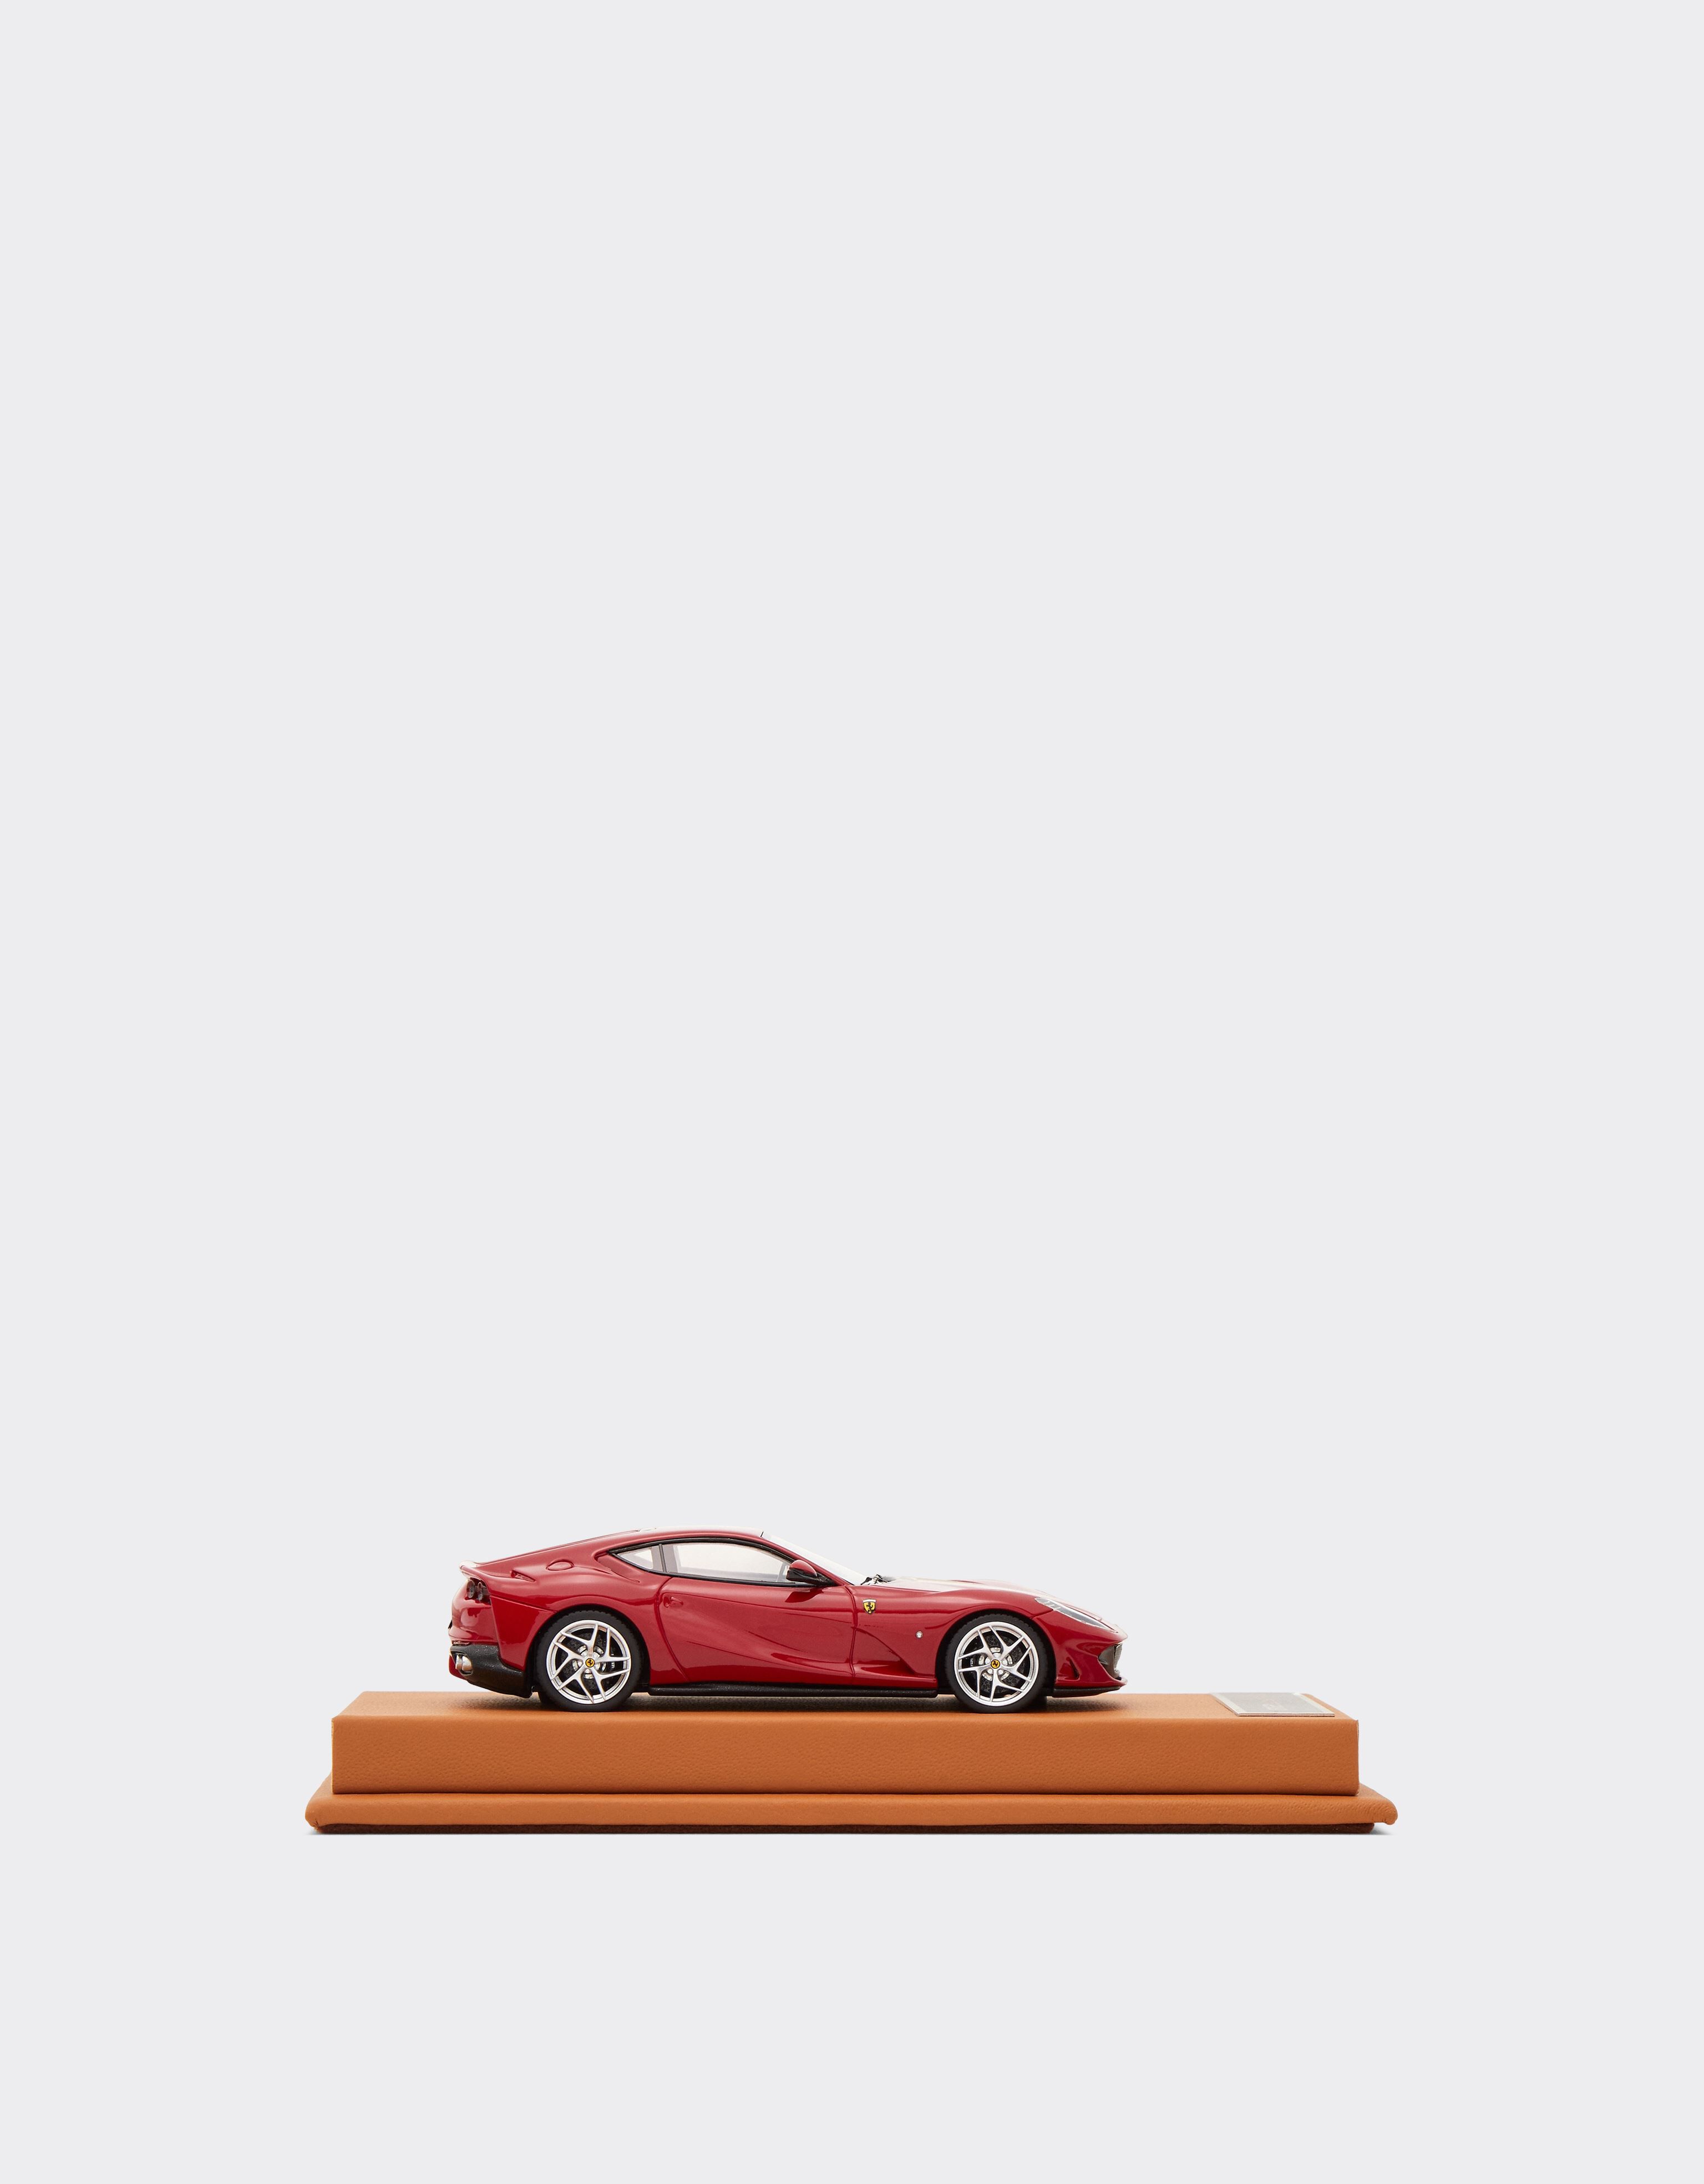 Ferrari Maqueta Ferrari 812 Superfast a escala 1:43 Rojo 47298f